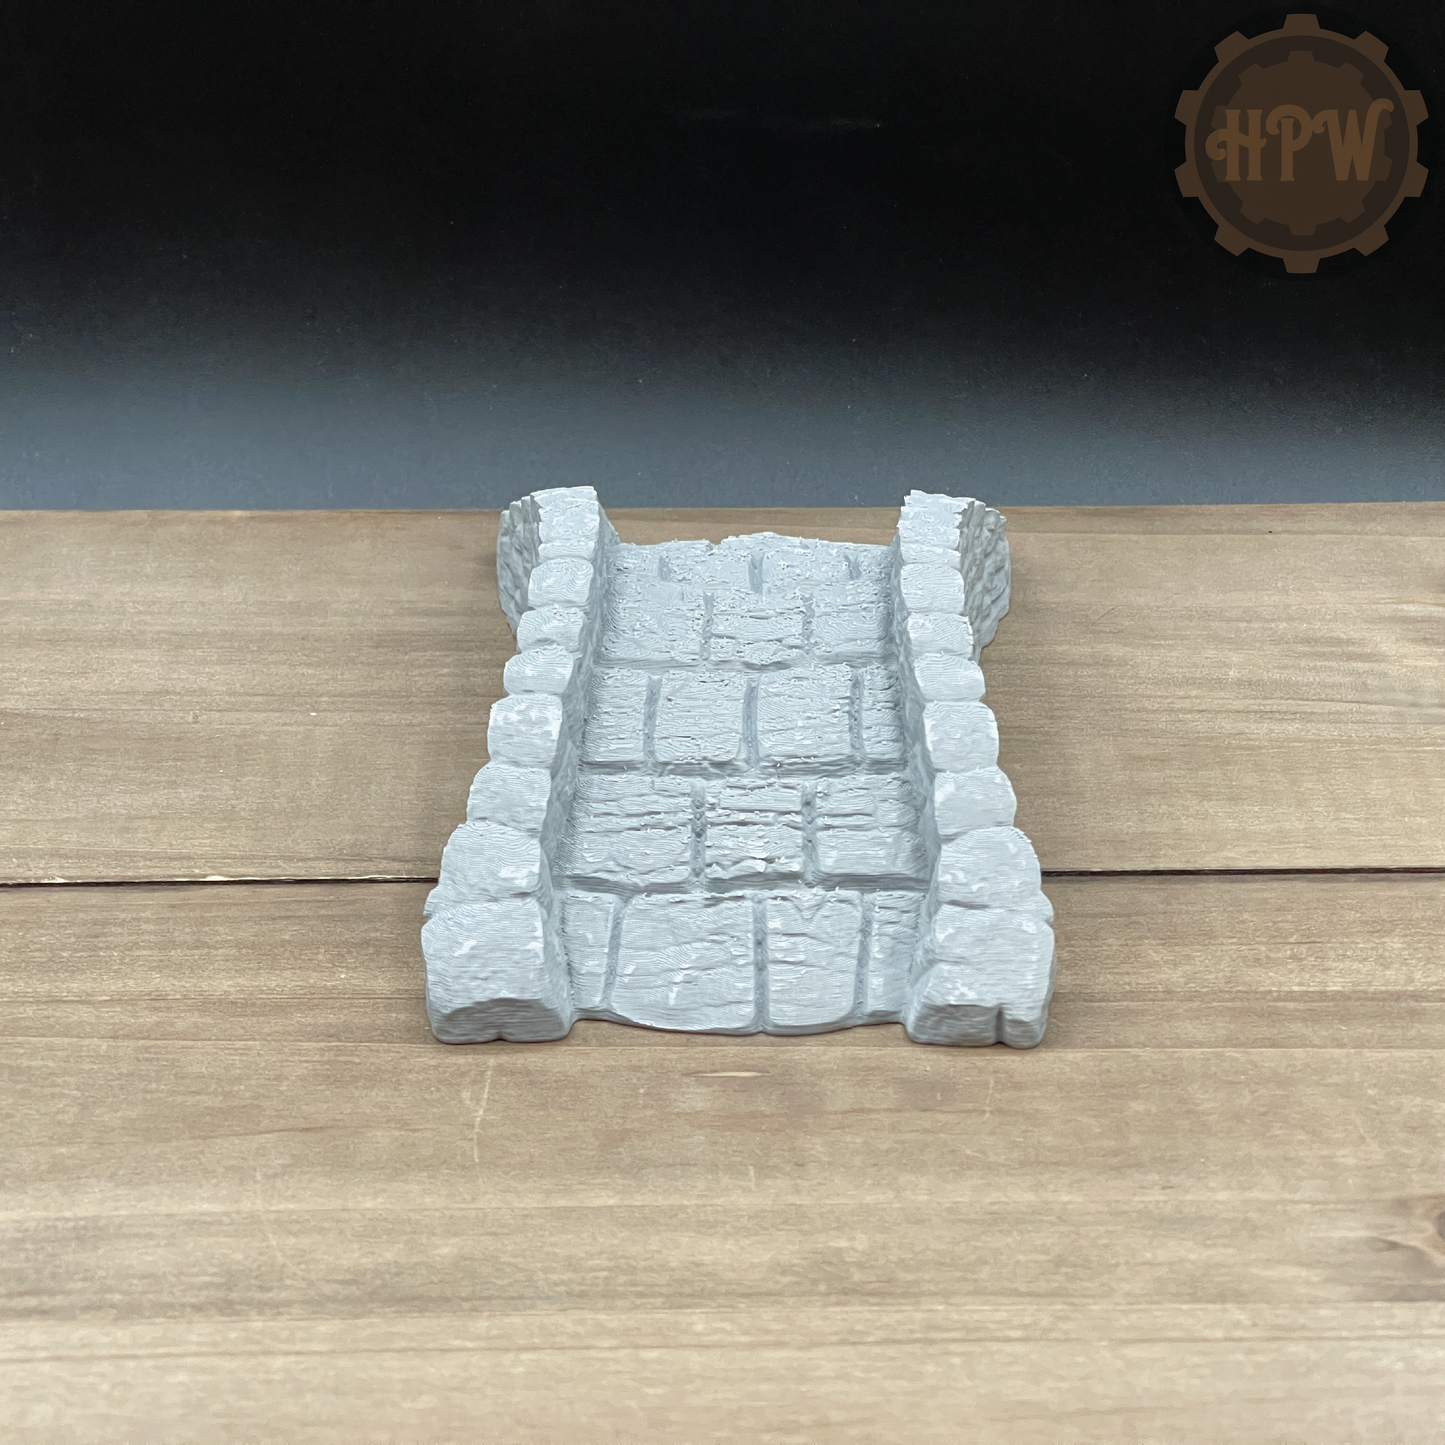 Stone Bridge | River Crossing | Miniature Gaming Terrain Kit | 3DP4U | Medieval Town Set 1